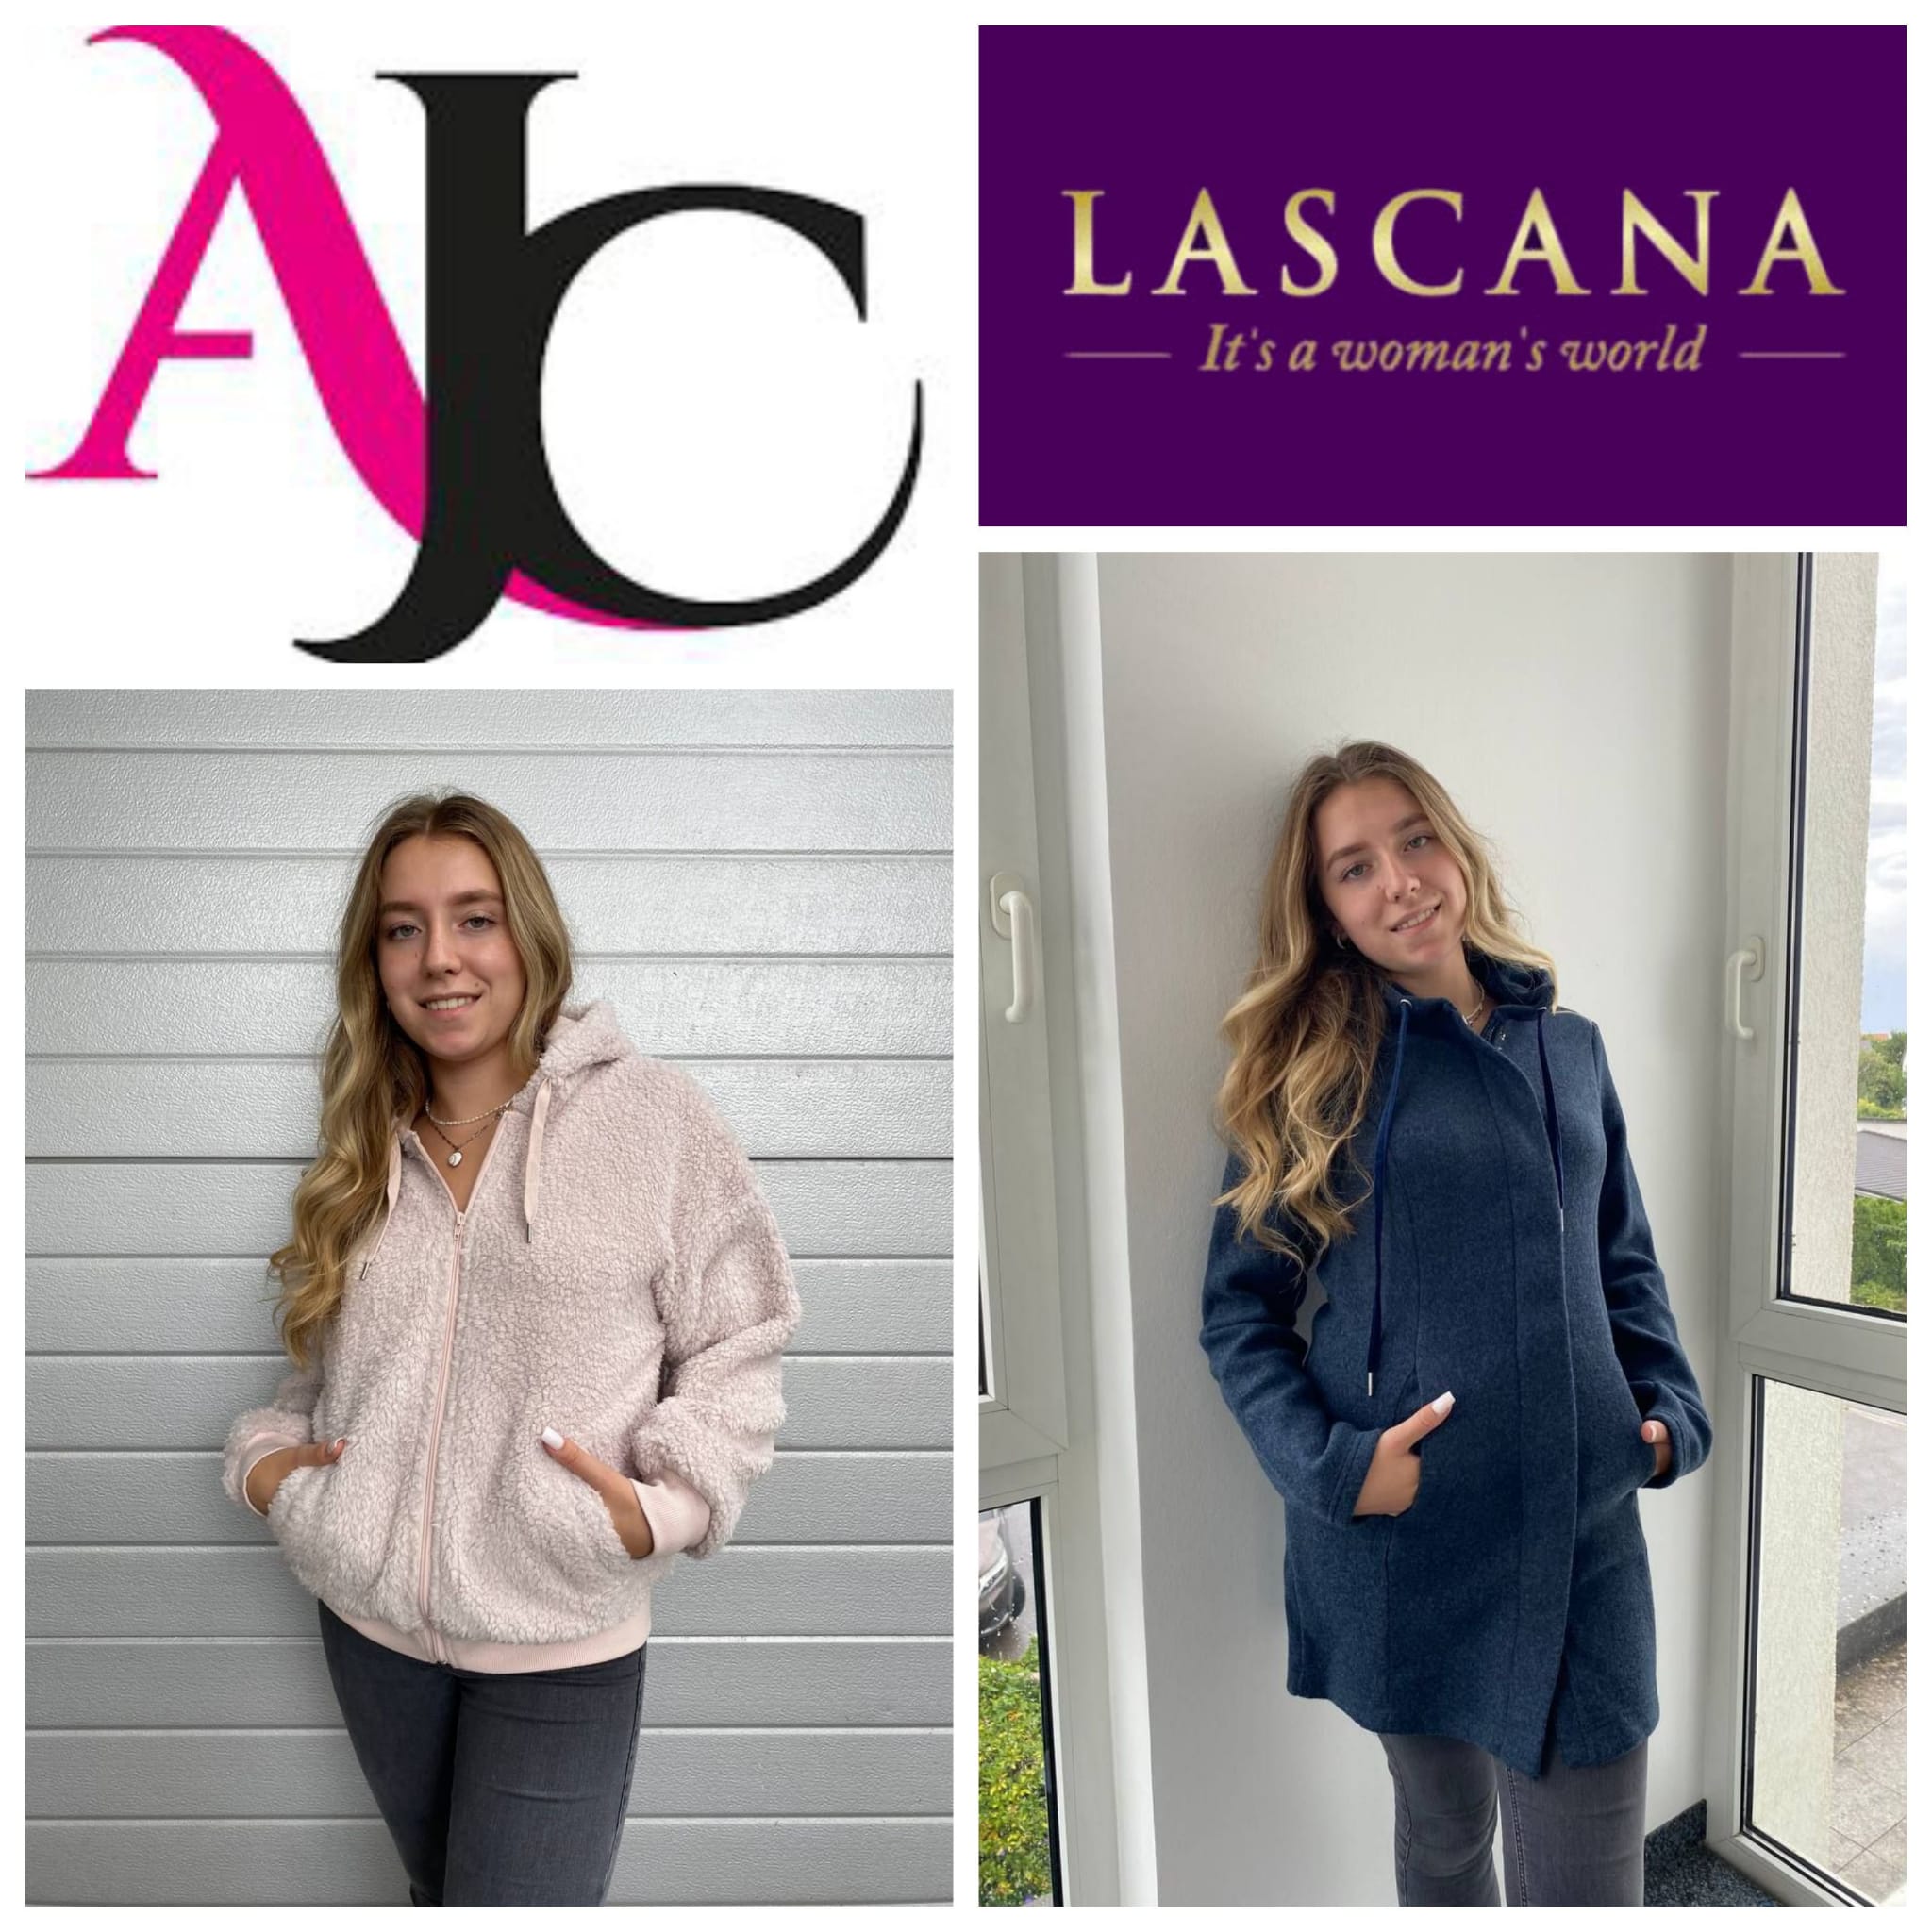 Lascana and AJC